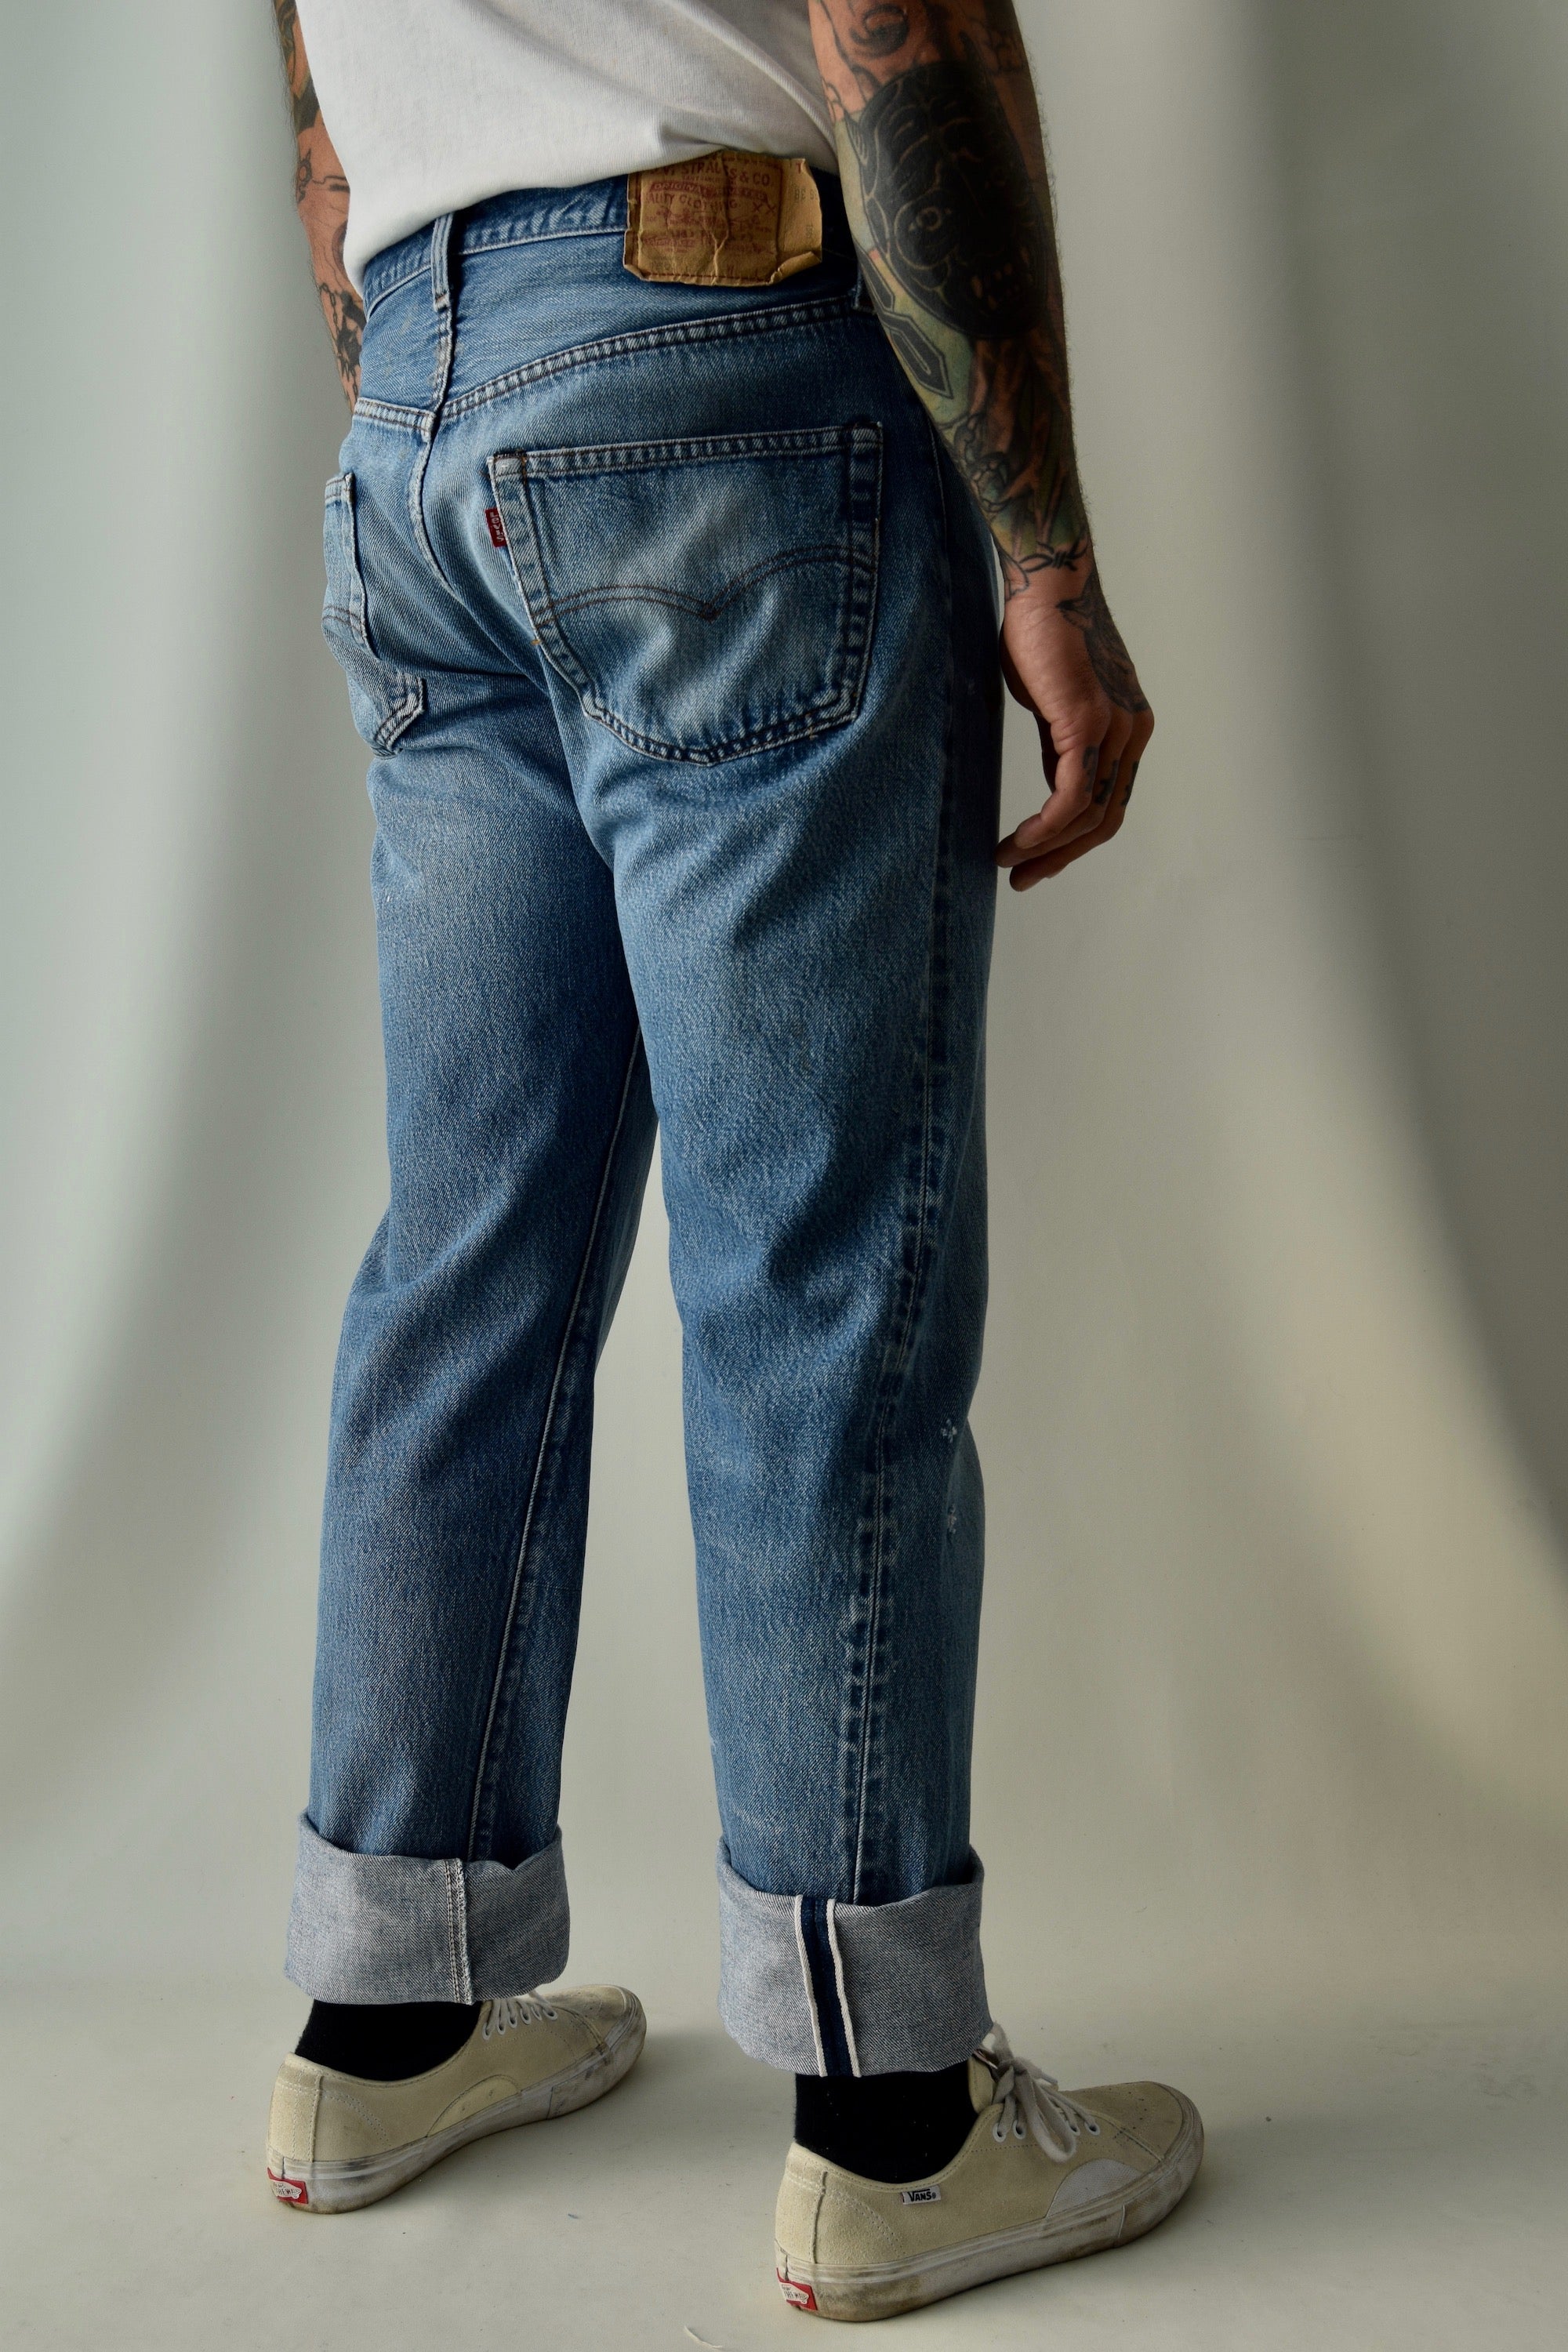 Vintage 1980's Levis Redline Selvedge Jeans